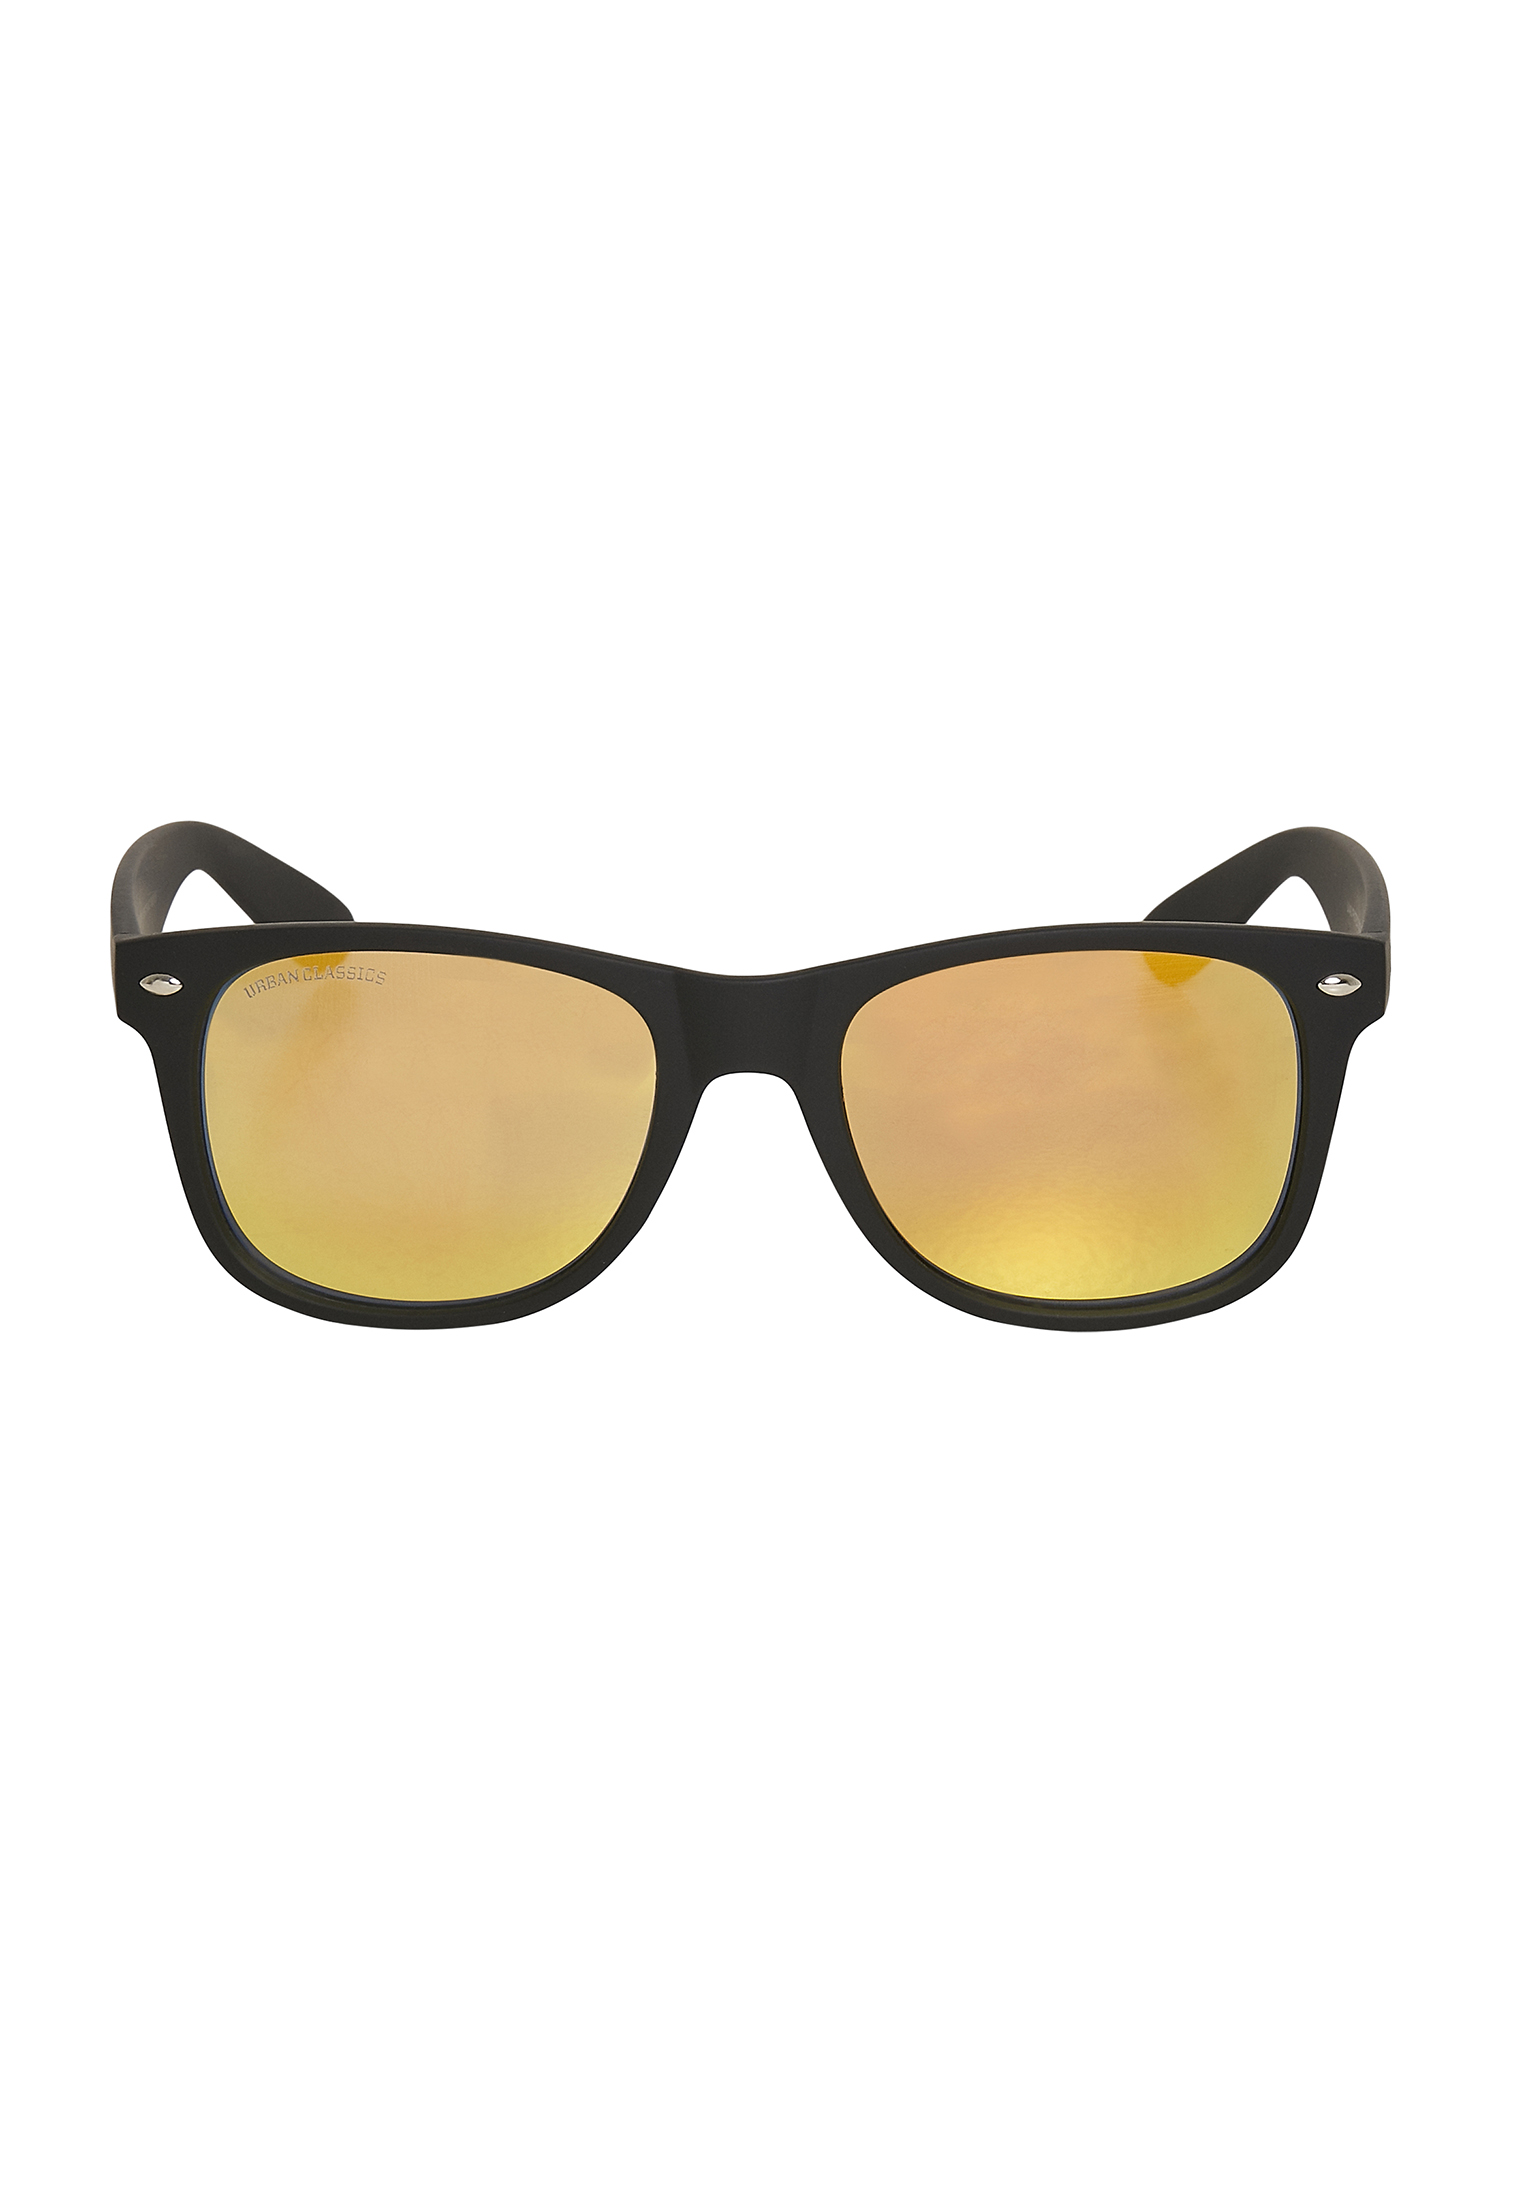 Sonnenbrillen Sunglasses Likoma Mirror UC in Farbe blk/orange